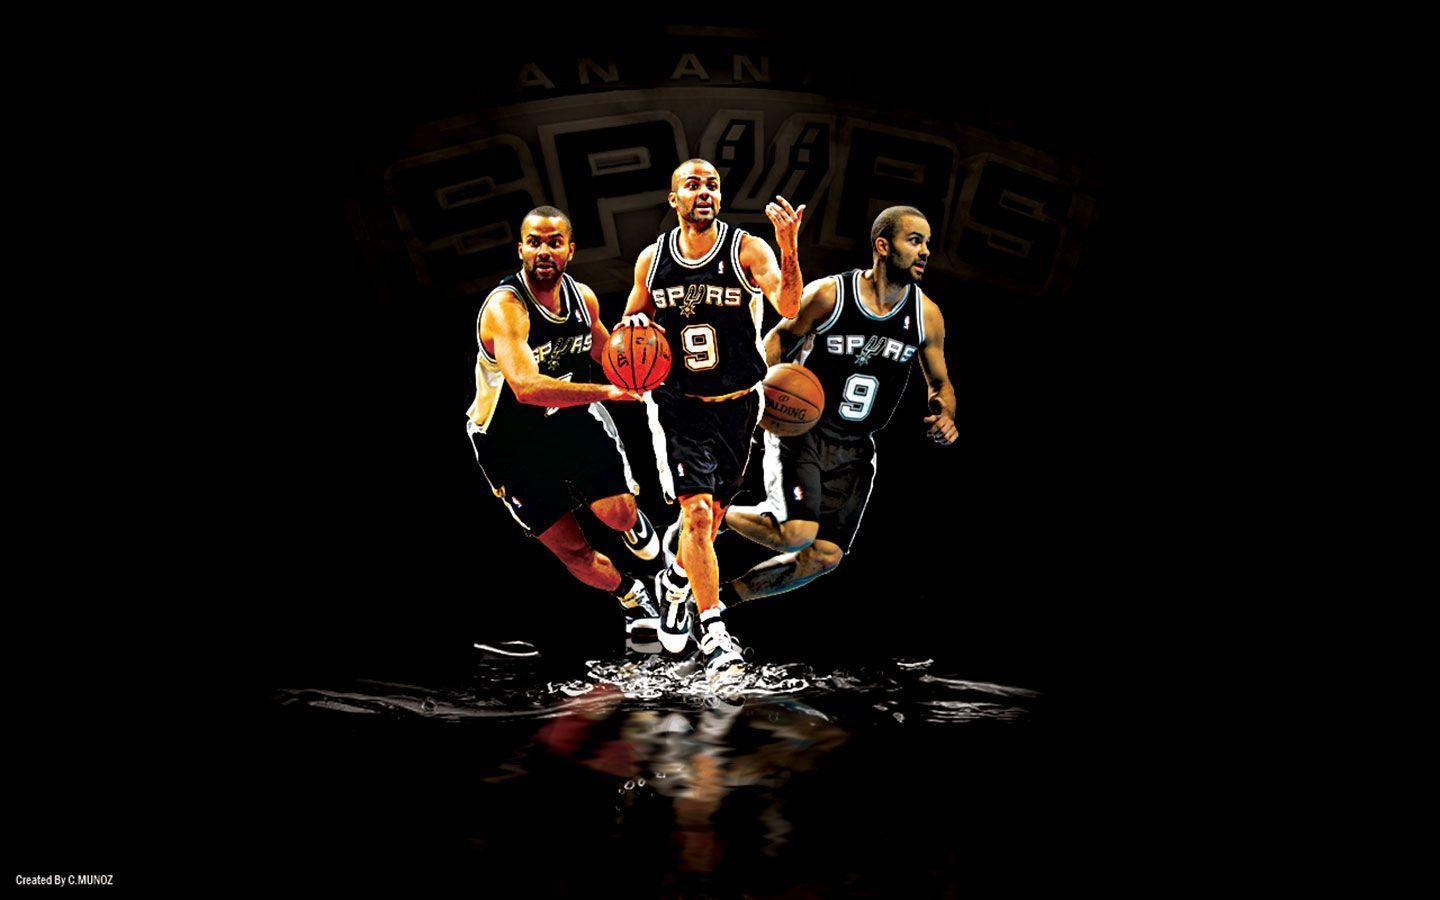 Free San Antonio Spurs desktop wallpaper. San Antonio Spurs